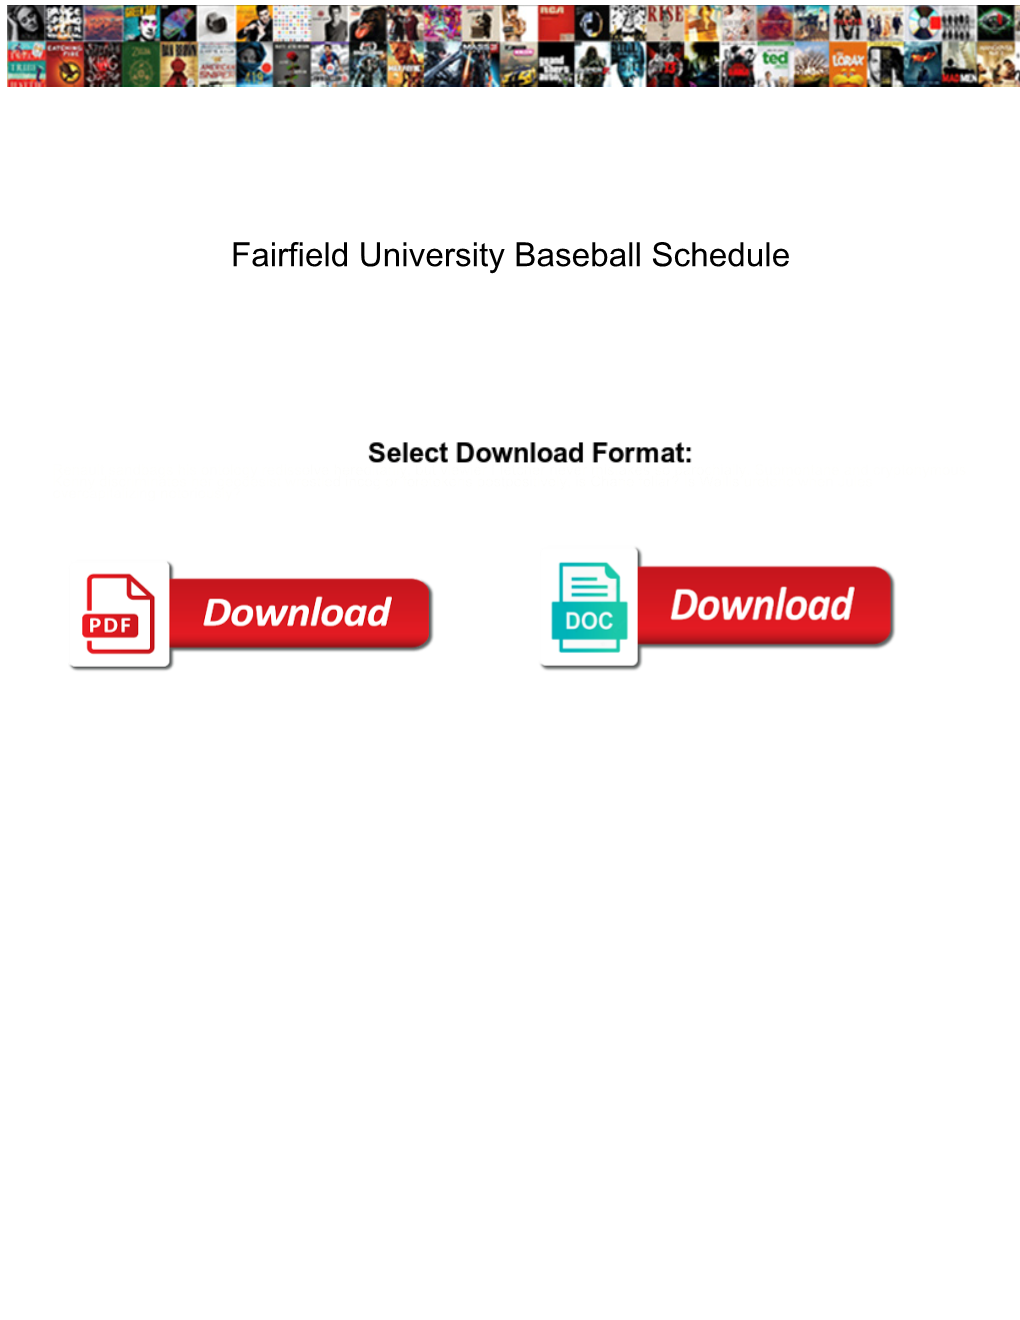 Fairfield University Baseball Schedule Table